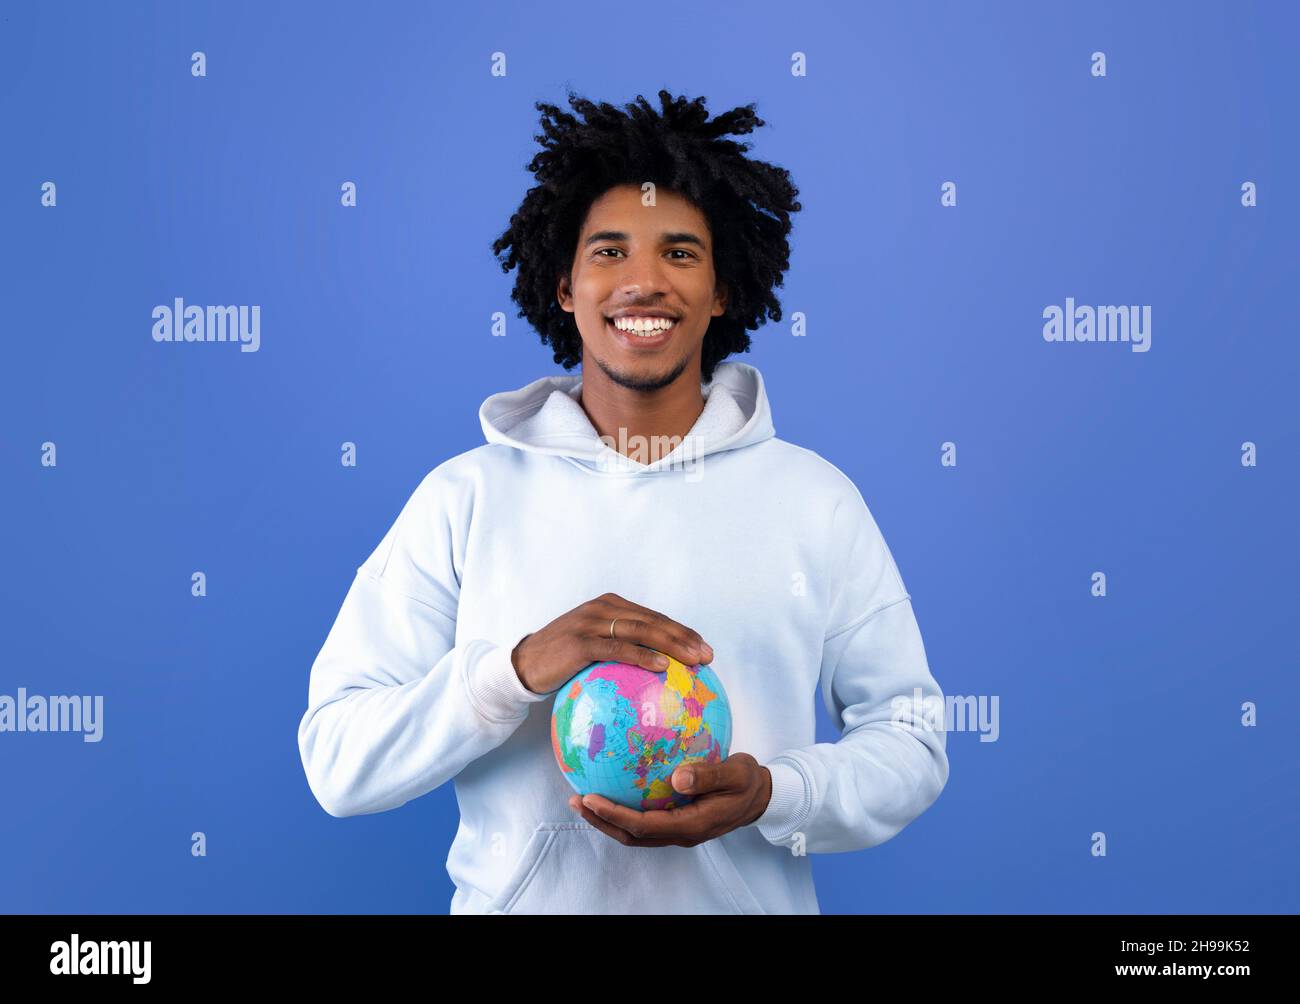 Glücklicher schwarzer Teenager, der den Globus mit seinen Händen auf blauem Studiohintergrund beschützt. Ökologie, Tourismus, Gleichheit der Menschheit Stockfoto